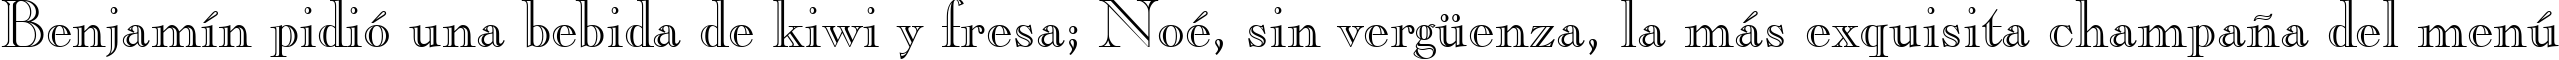 Пример написания шрифтом Caslon Openface BT текста на испанском